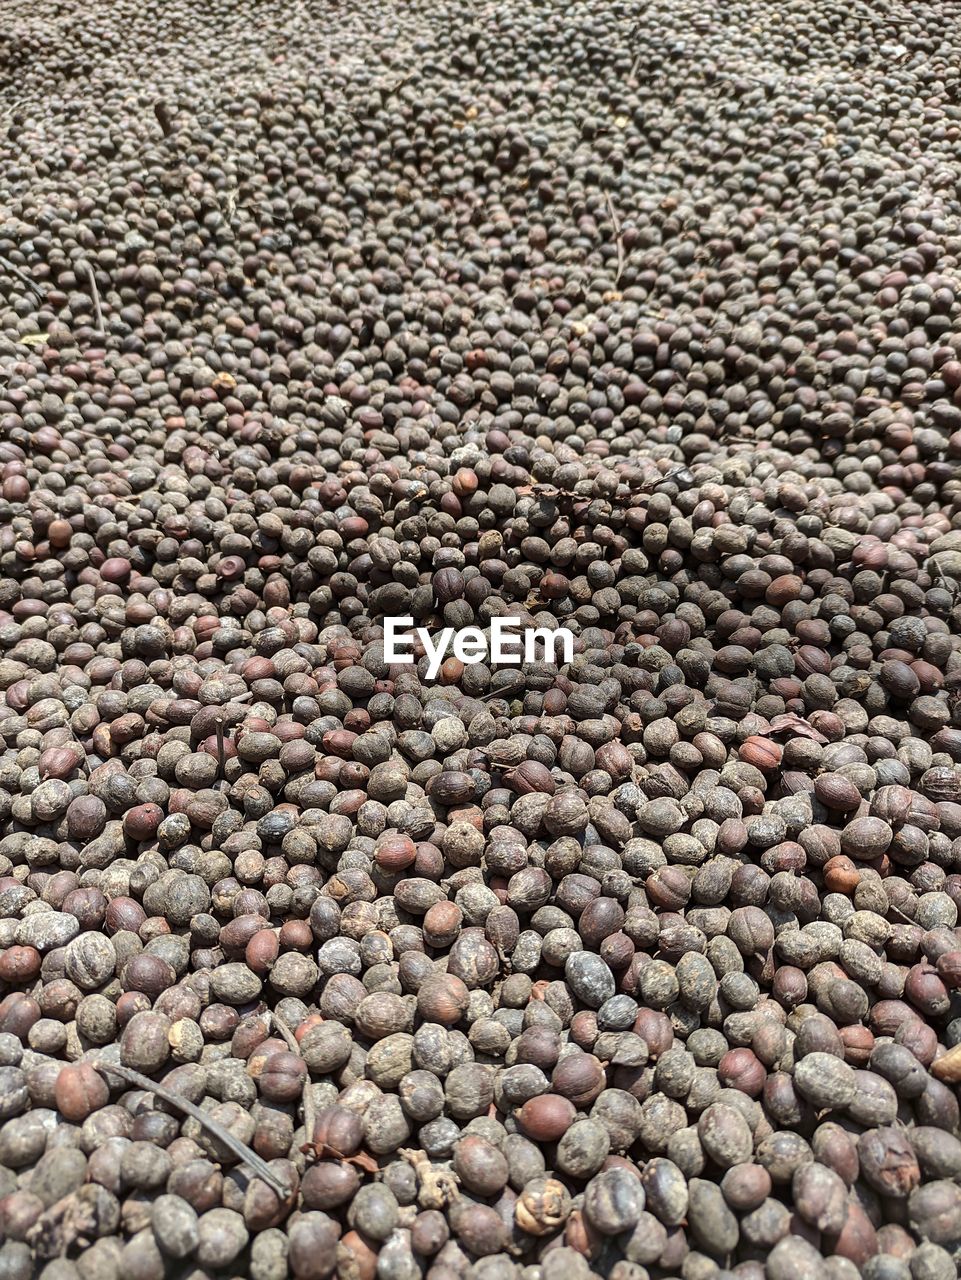 Group of javanese coffe bean